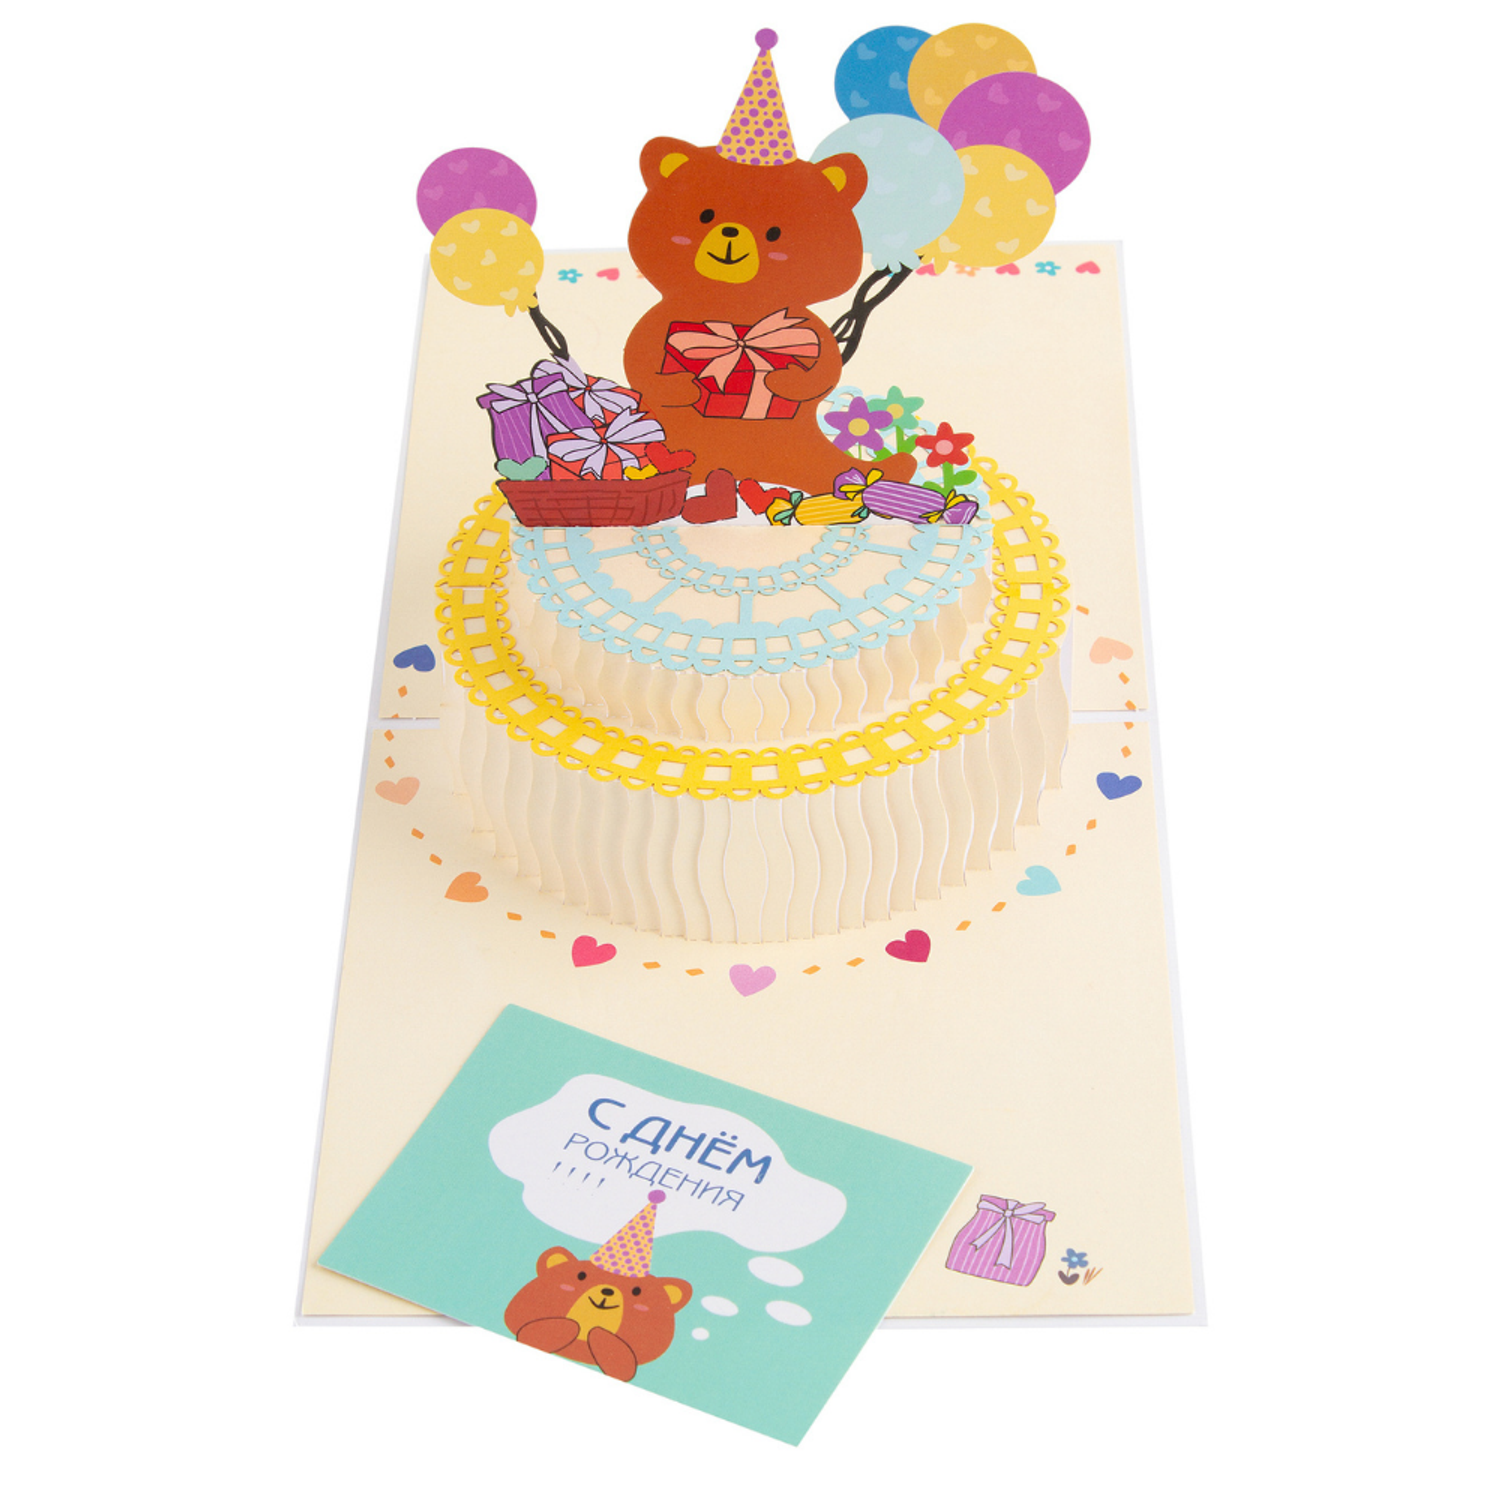 Открытка на день рождения ребенка Изображения – скачать бесплатно на Freepik